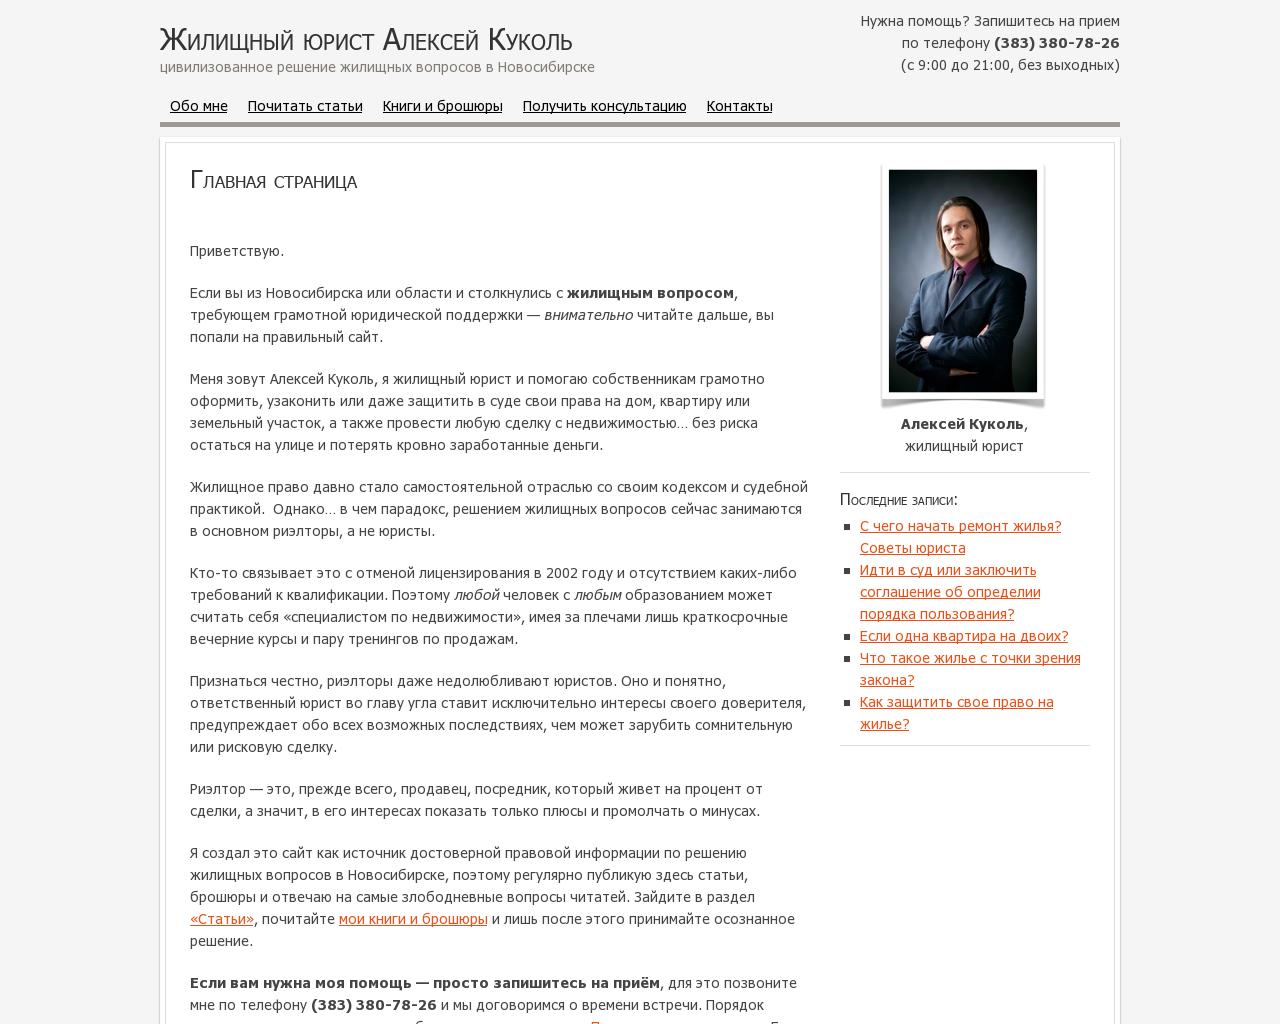 Изображение сайта kukoll.ru в разрешении 1280x1024